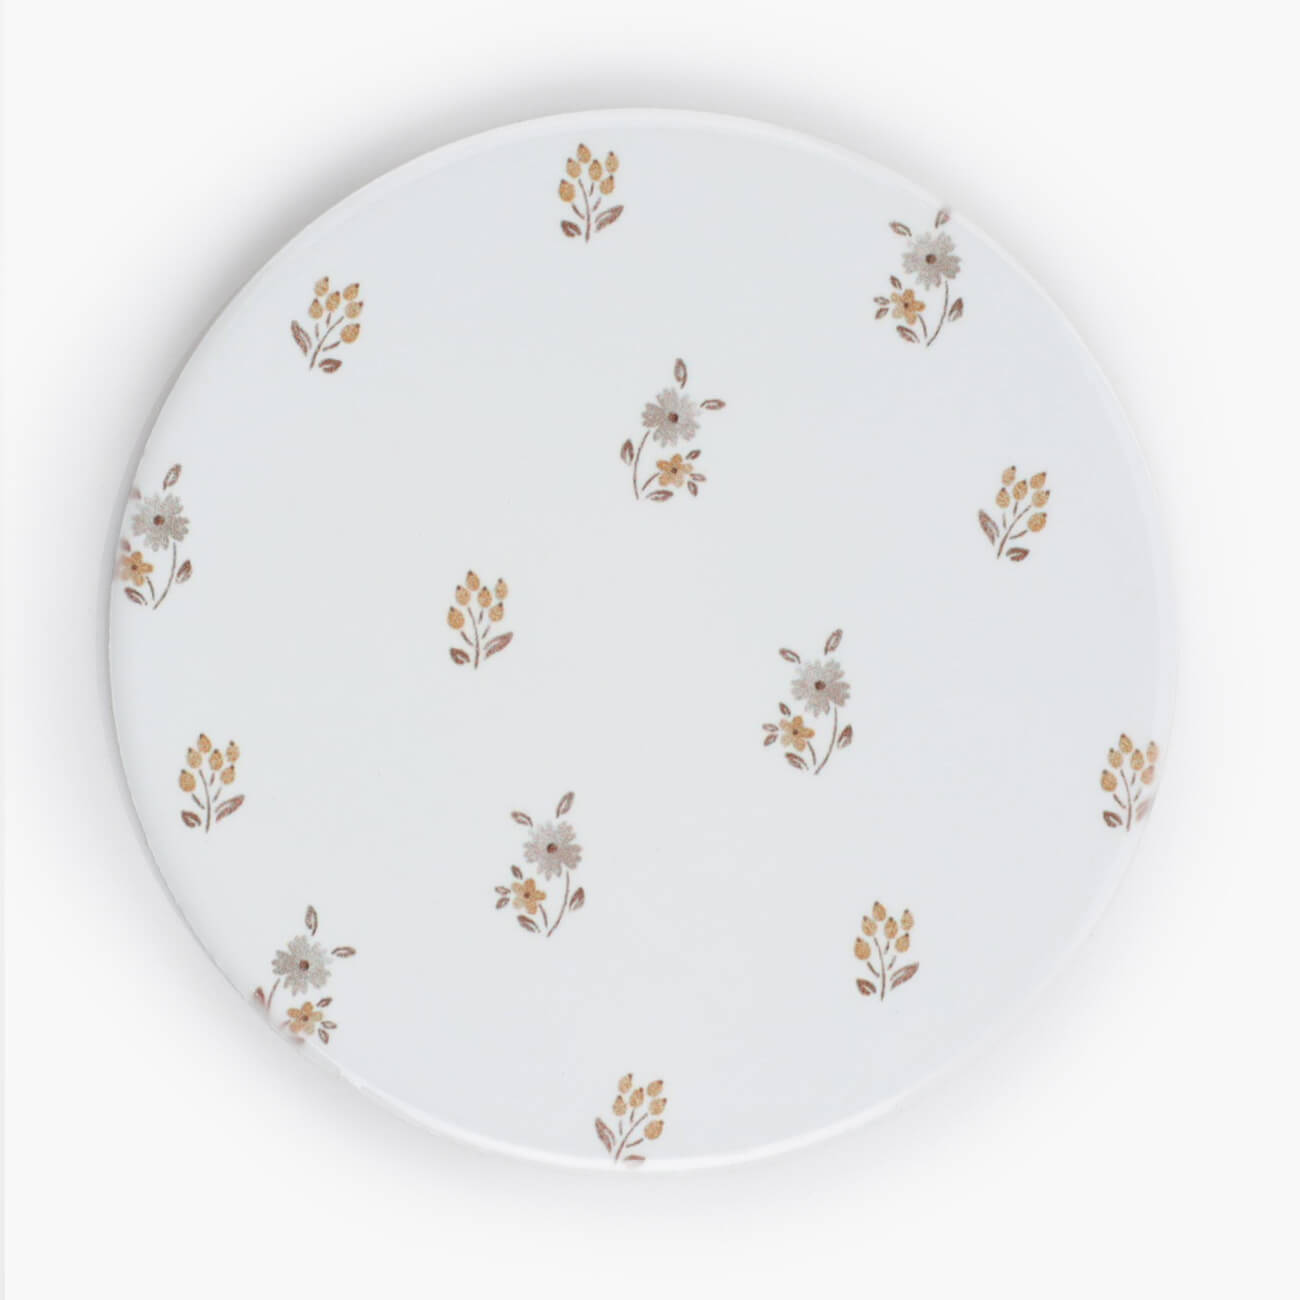 Подставка под кружку, 11 см, керамика/пробка, круглая, молочная, Винтажные цветы, La flore форма для запекания 28 см керамика круглая молочная cakes ivory